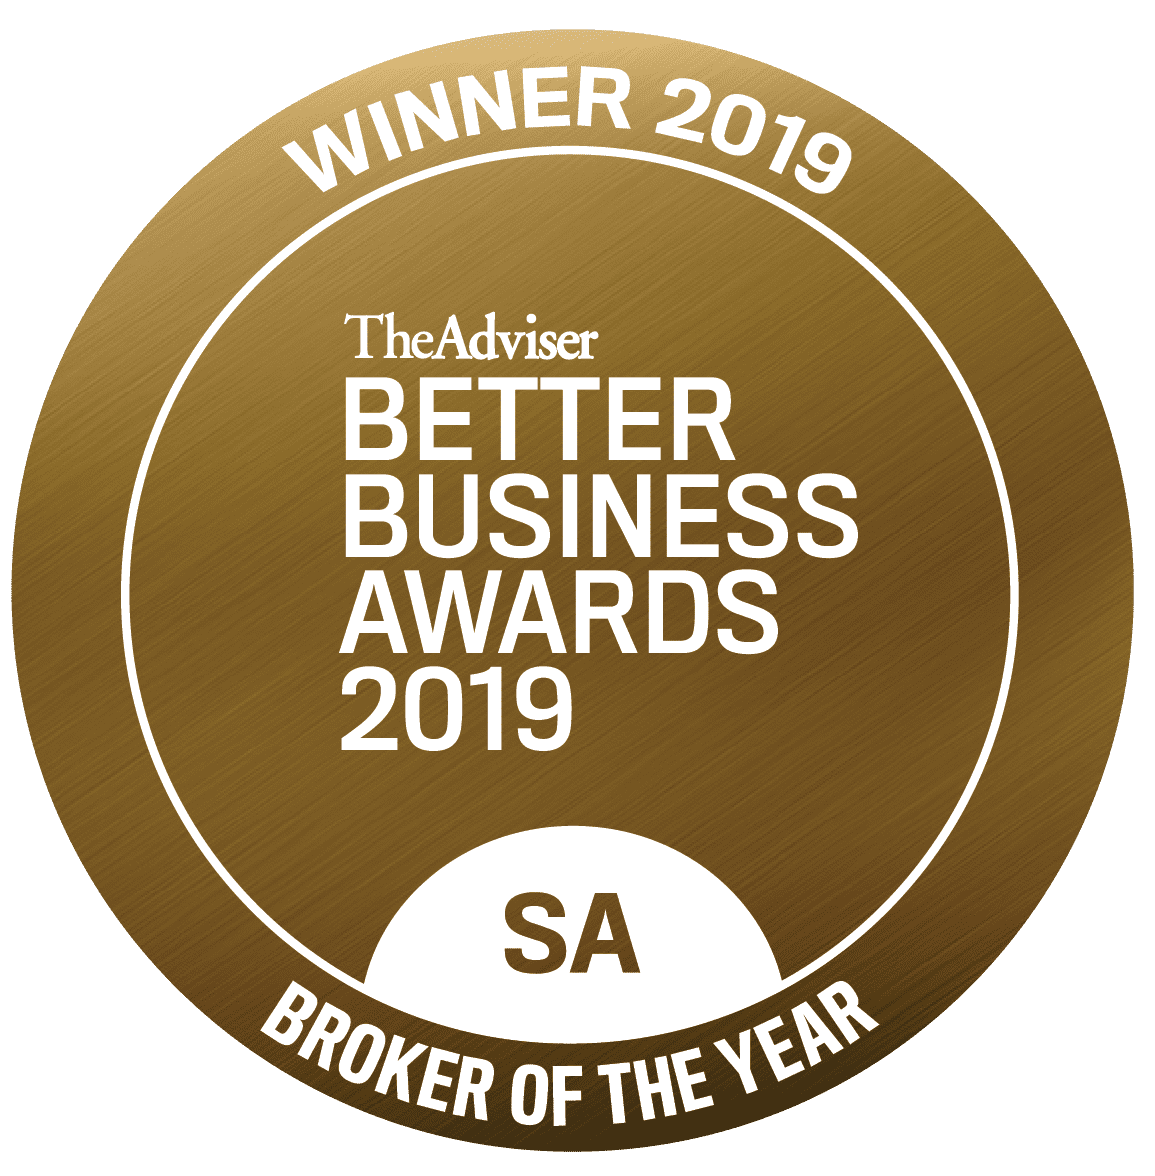 WINNER - 2019 - BETTER BUSINESS AWARDS - BROKER OF THE YEAR